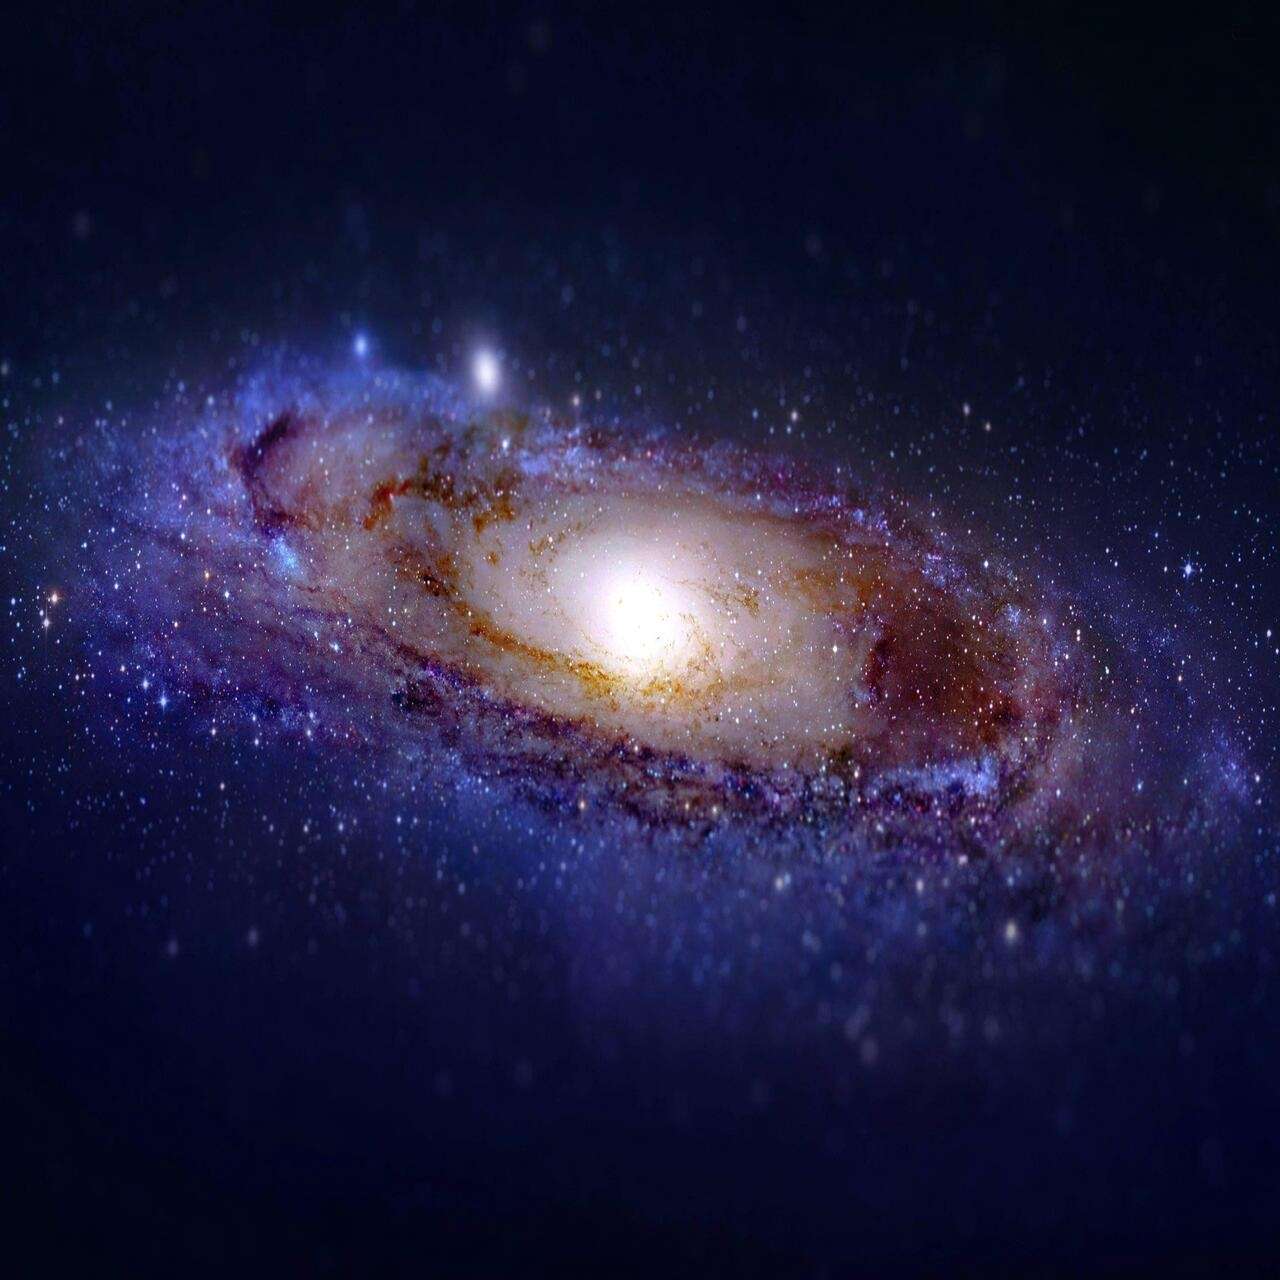 Andromeda by ElCatrin 16x by elcatrinmc on PvPRP